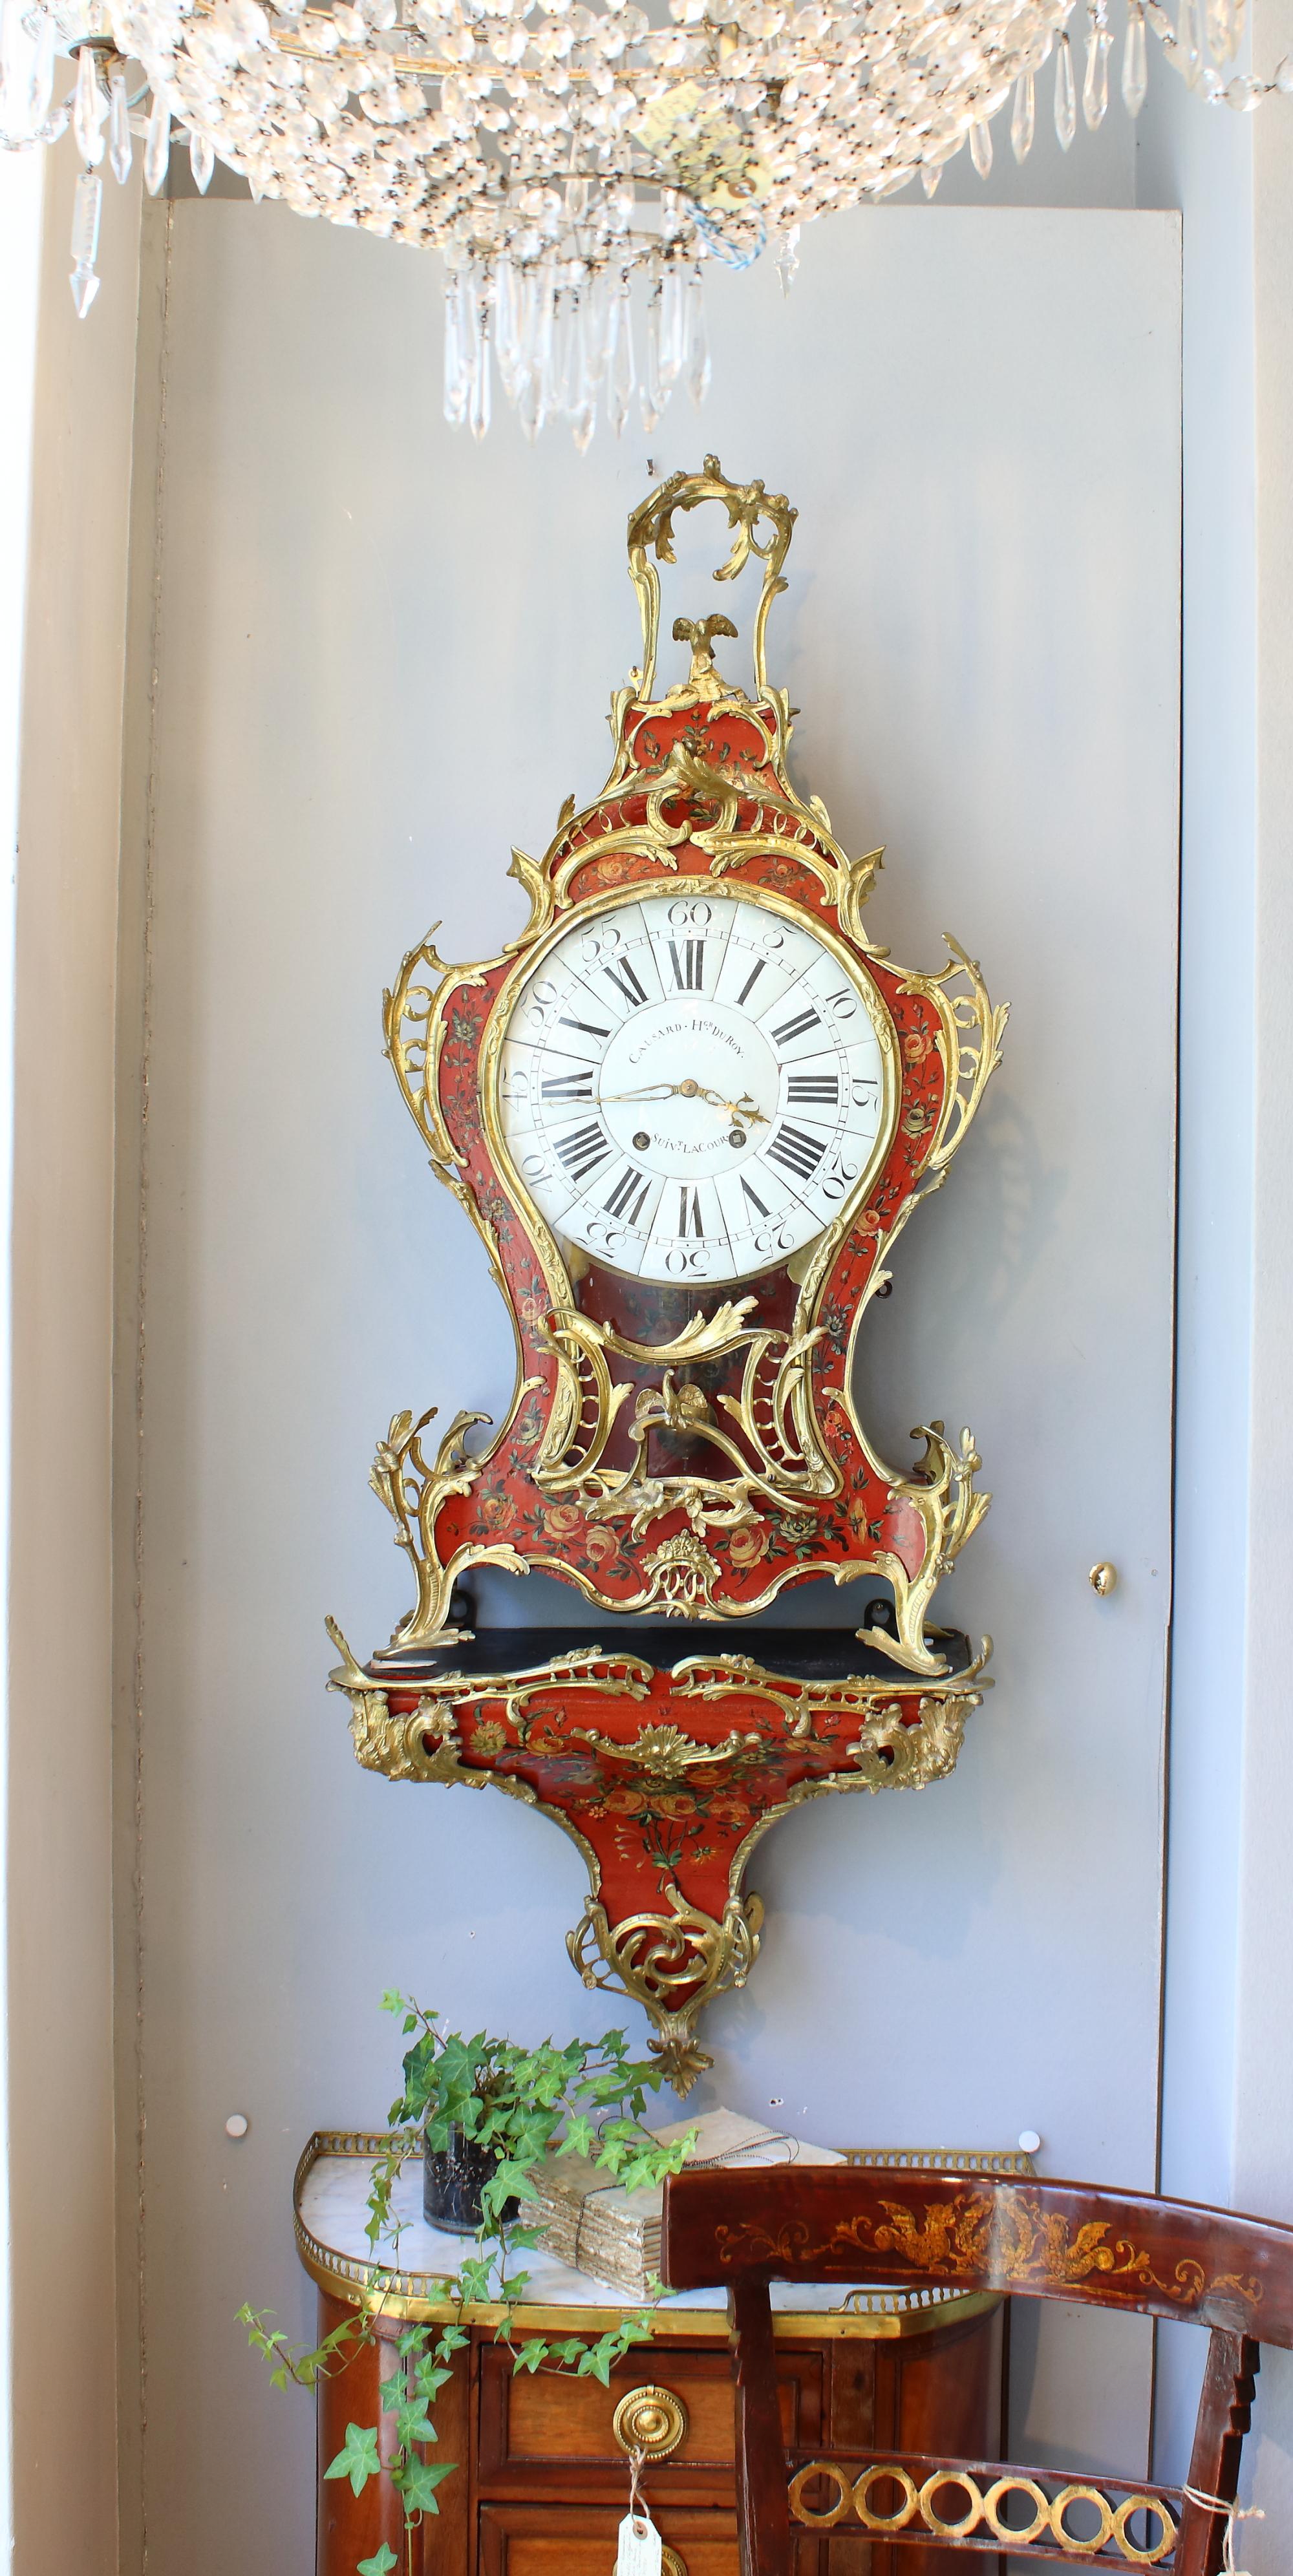 Grande horloge de cartel et console en bronze doré Vernis Martin du 18e siècle français

L'imposant et grand boîtier de l'horloge est décoré d'un très beau vernis Martin avec des gerbes de fleurs et des guirlandes sur un fond rouge. La boîte à